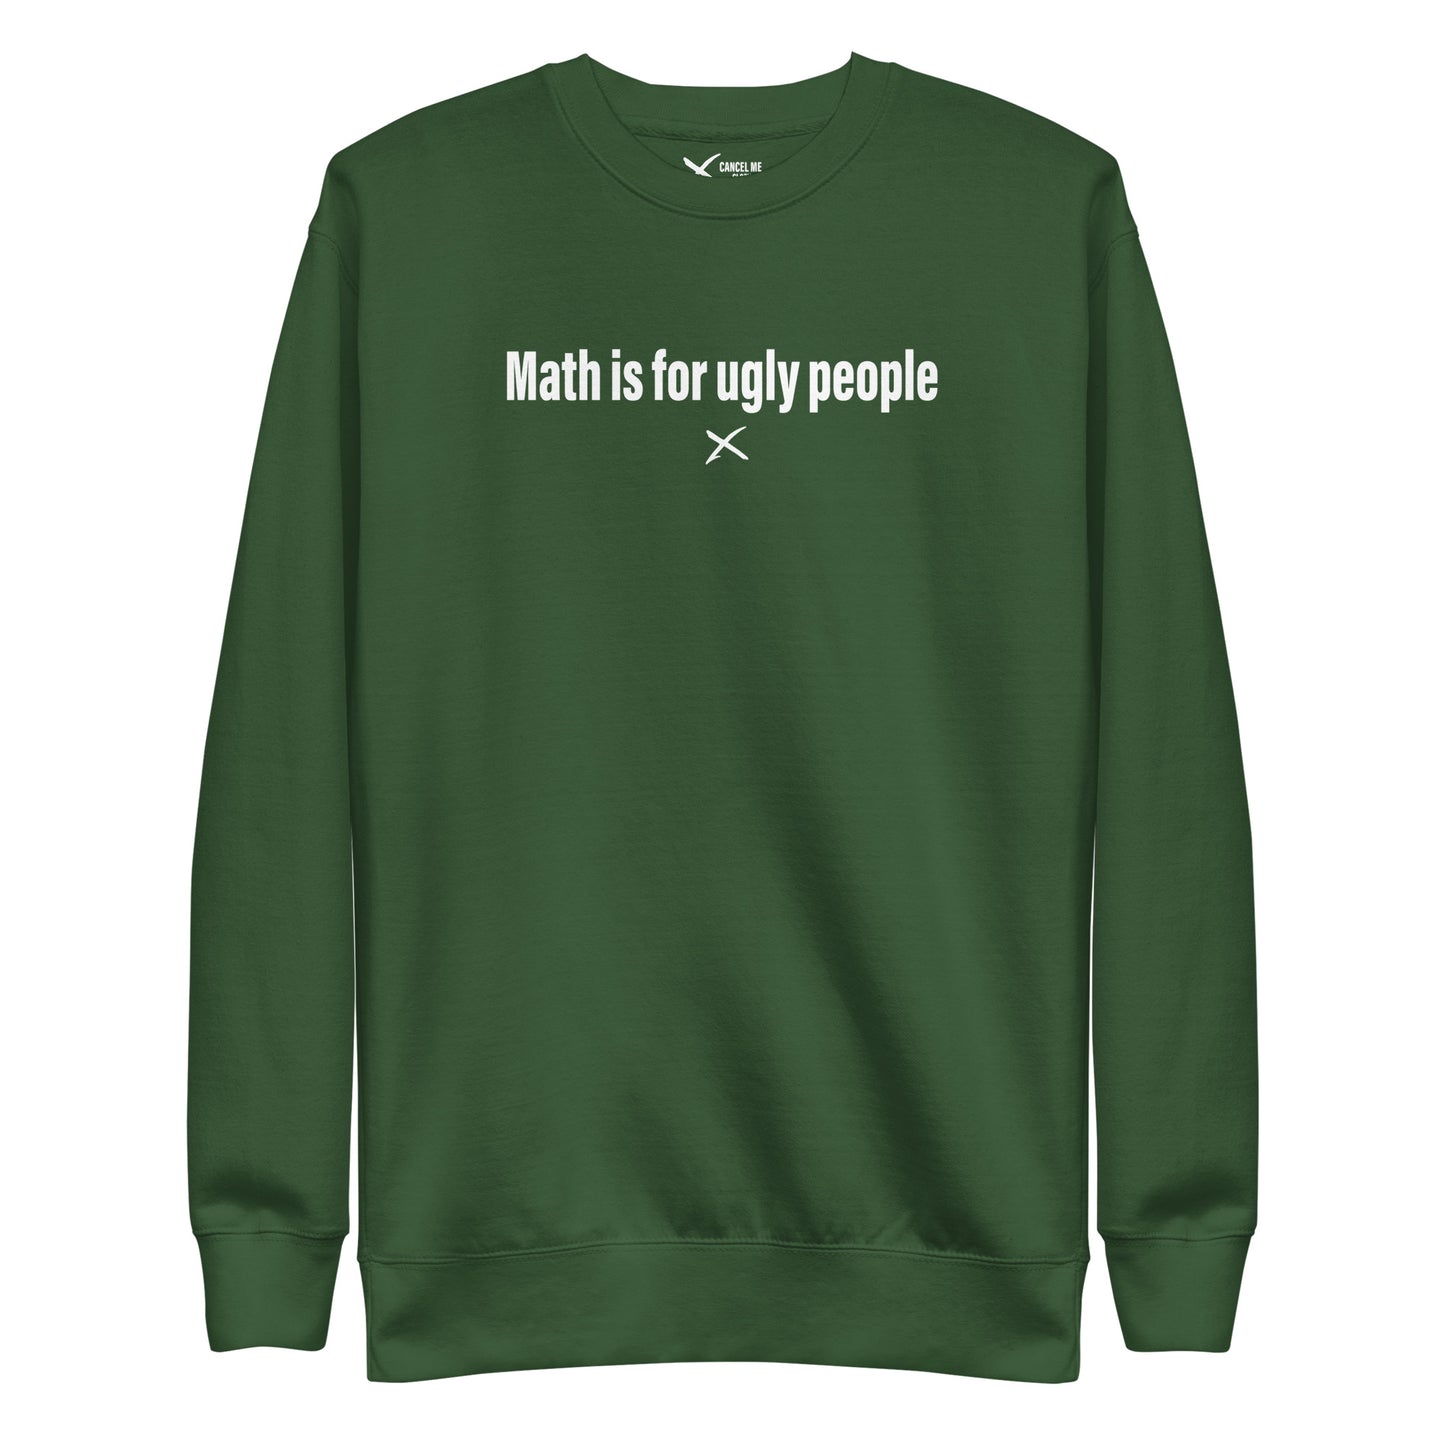 Math is for ugly people - Sweatshirt